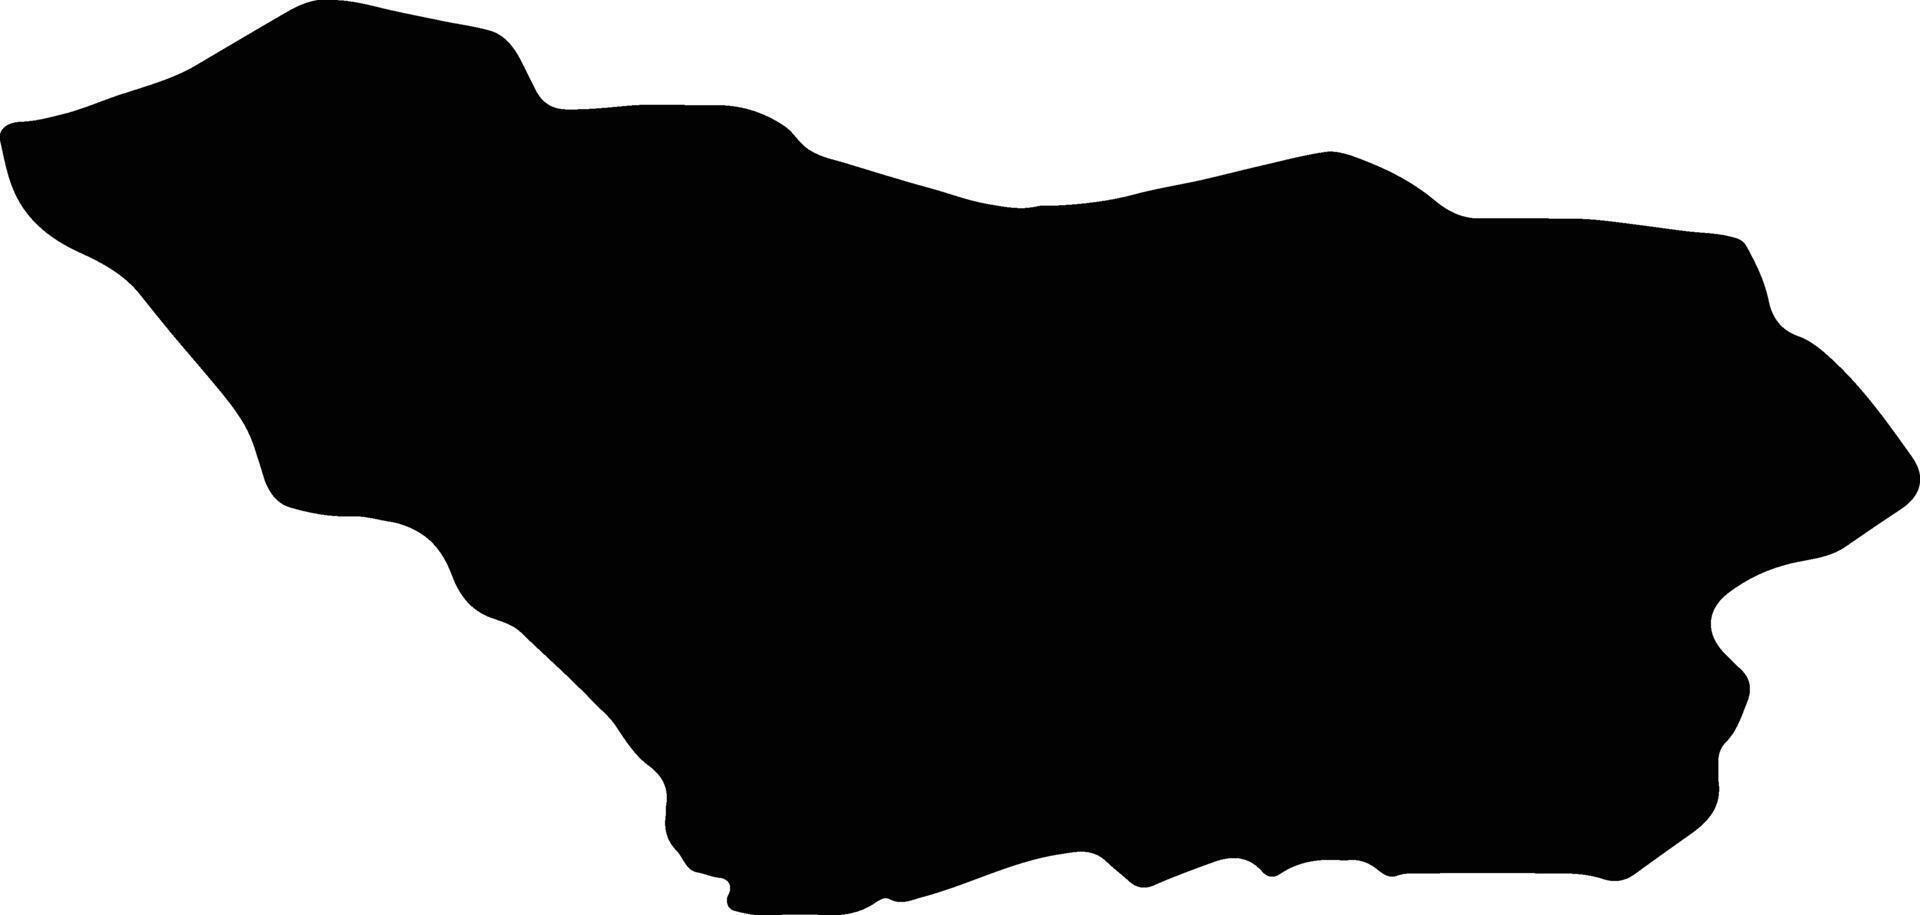 Colonia Uruguay silhouette map vector